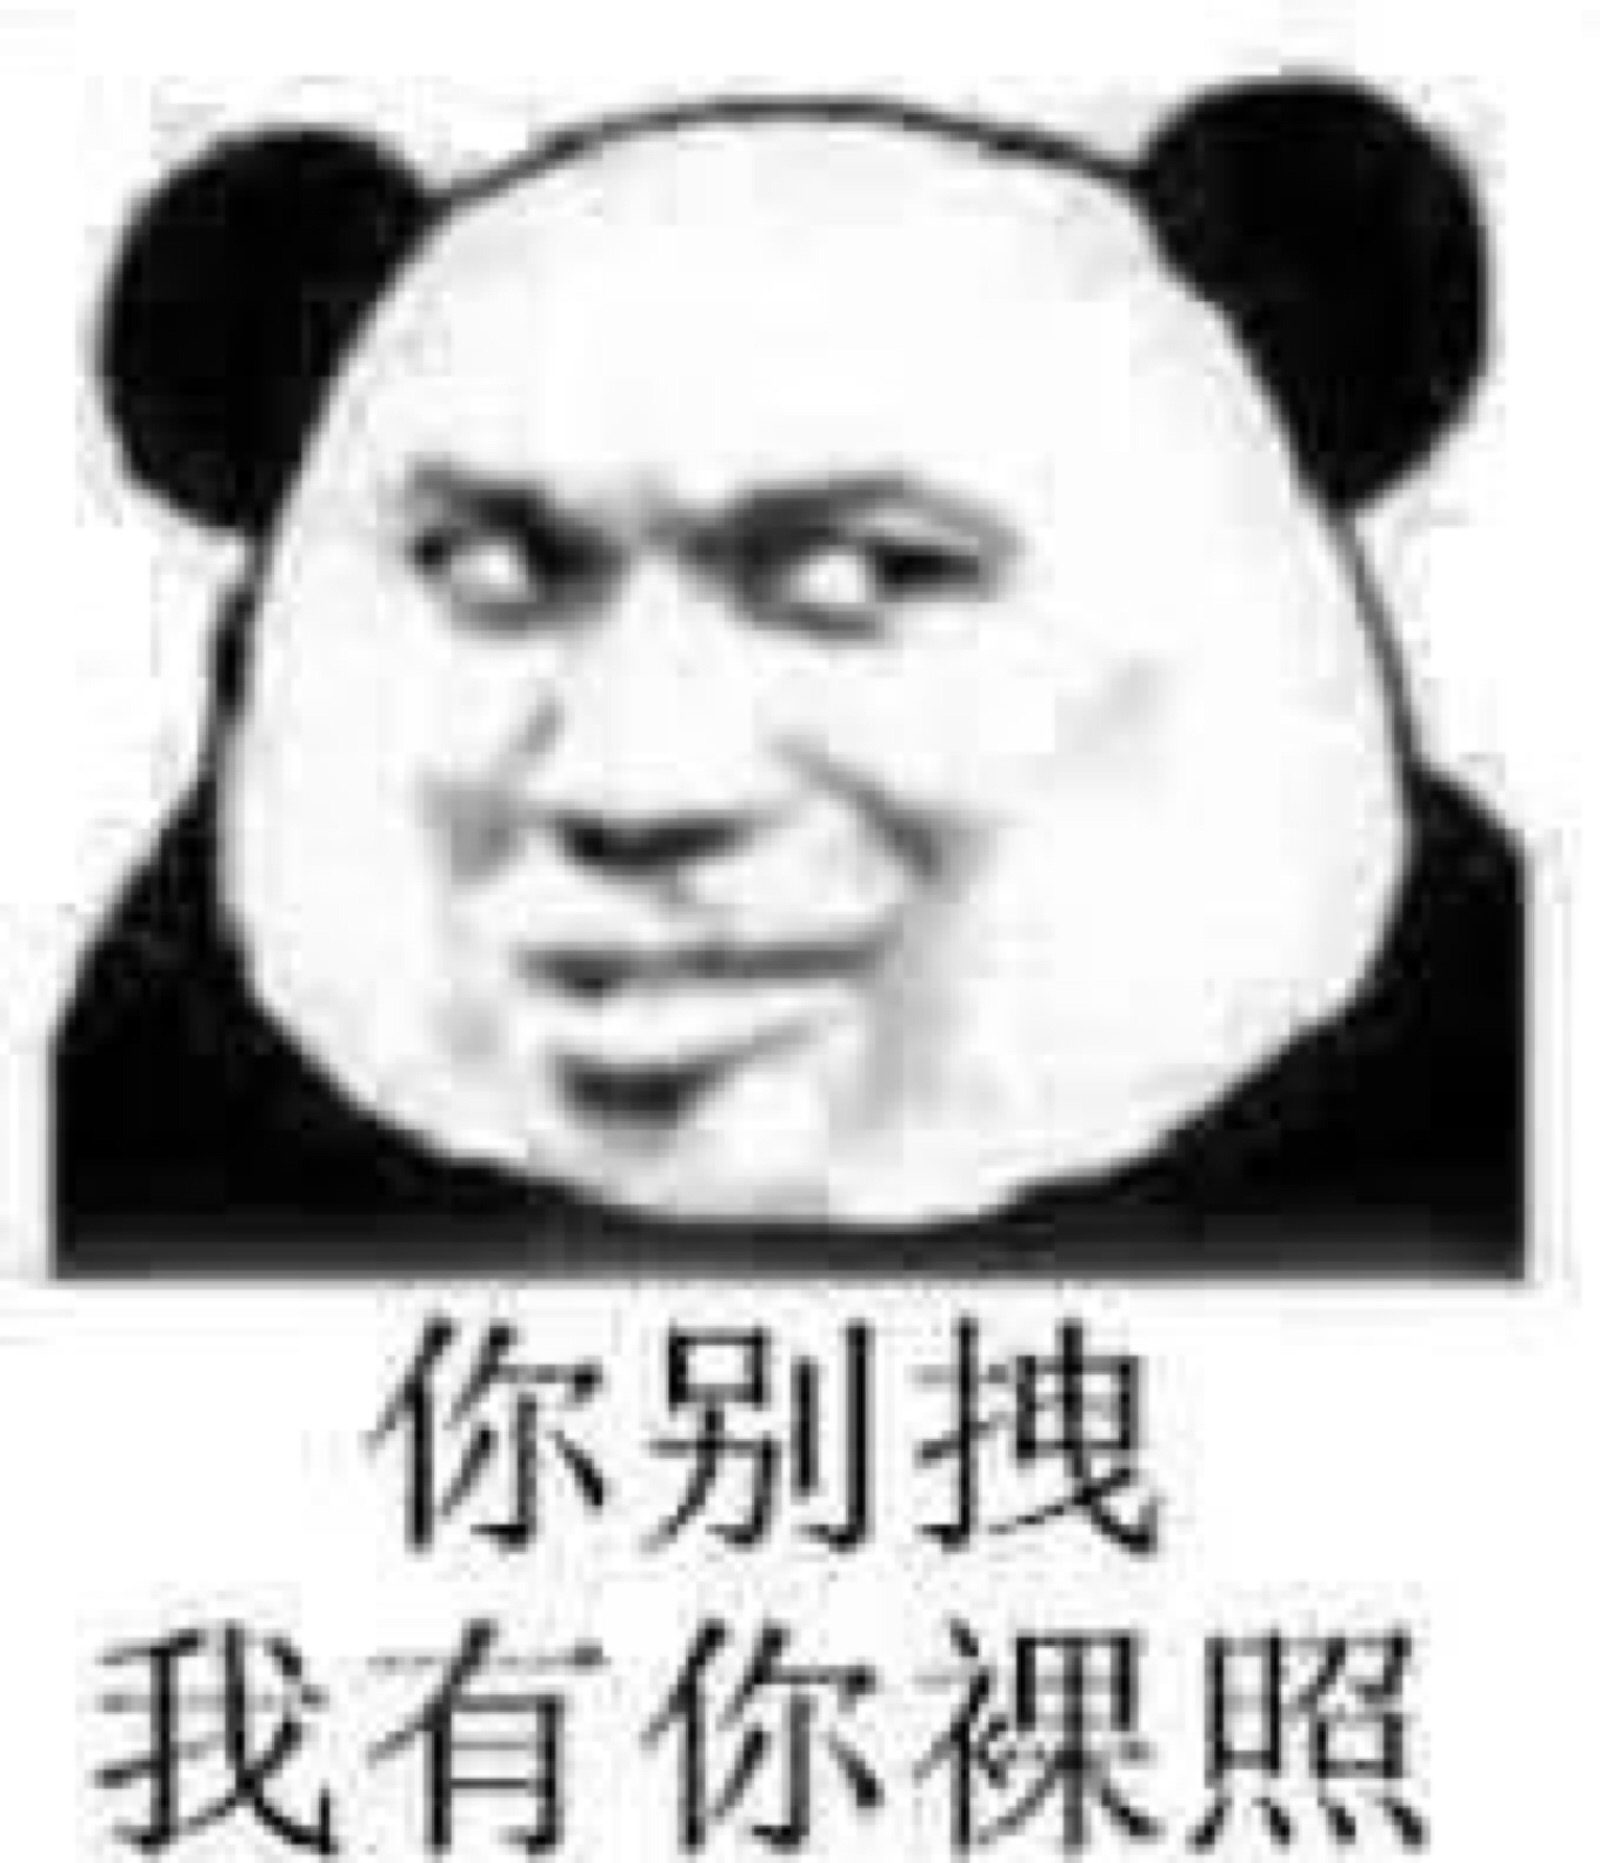 熊猫头表情包合集 蘑菇头 宠物 开车 斗图 表情